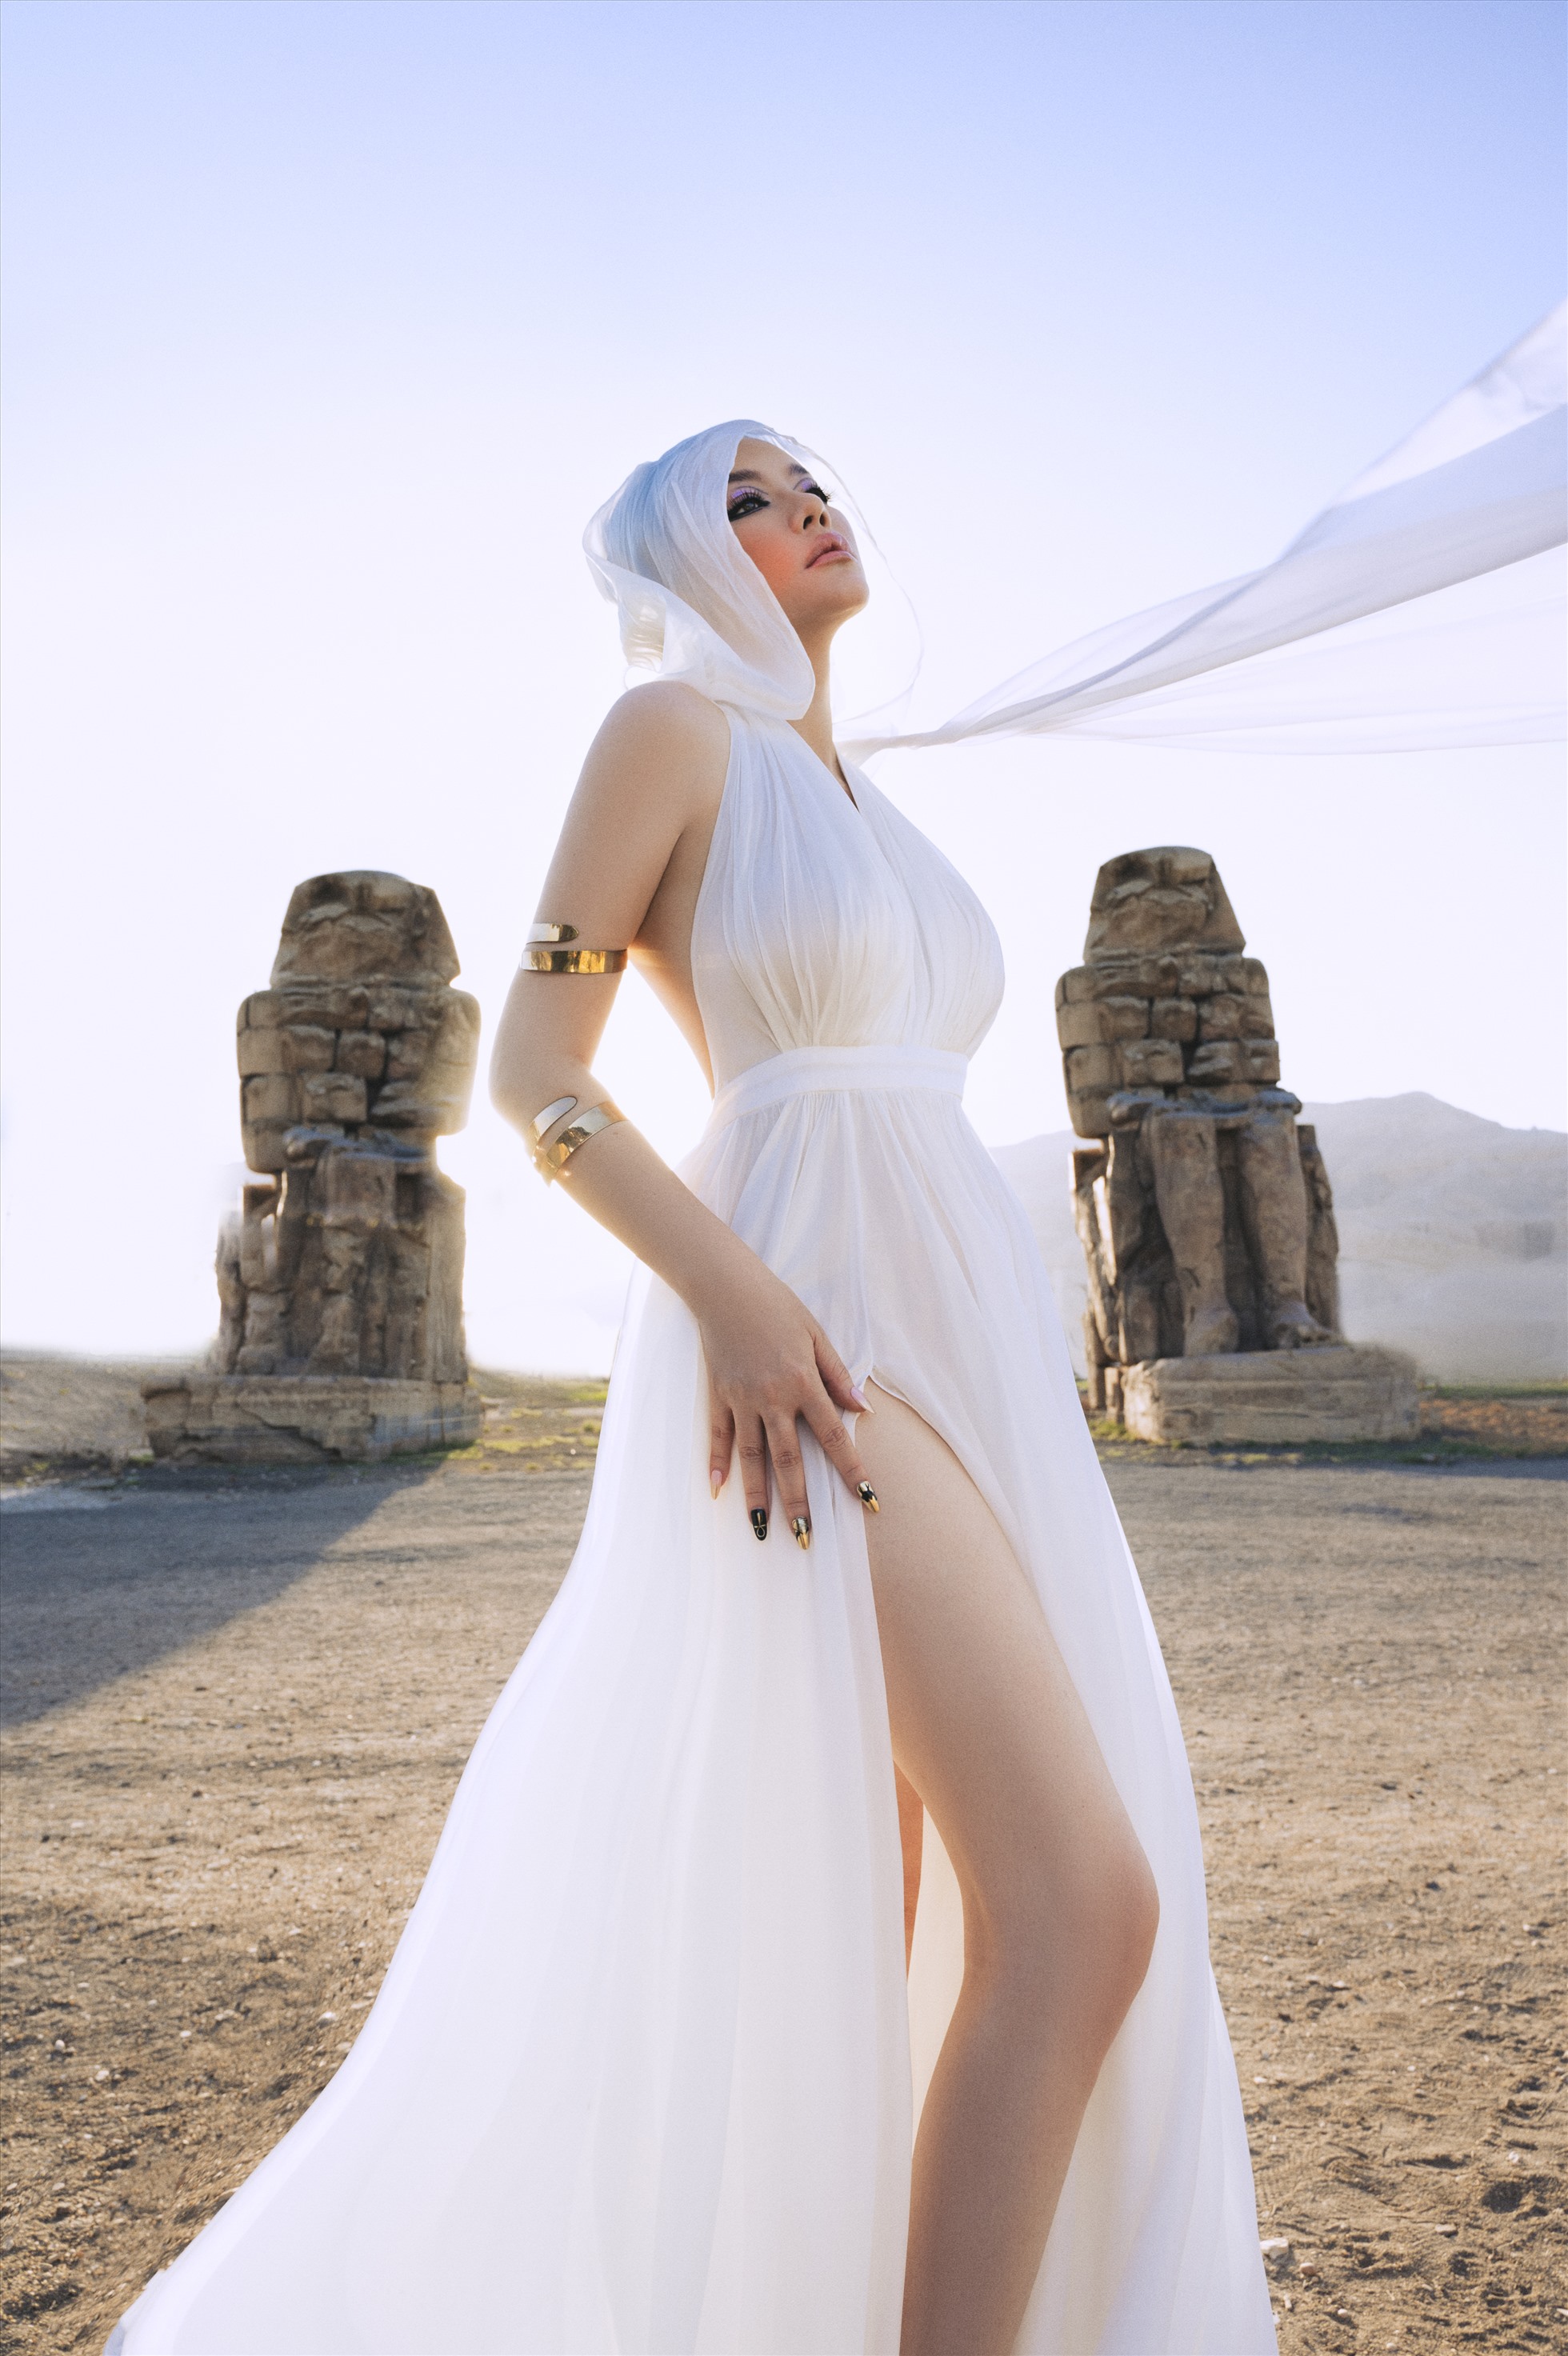 “Nếu như làm giống y hệt văn hóa Ai Cập thì sẽ không hay, đây là một bộ hình thời trang lấy cảm hứng từ văn hóa cổ đại Ai Cập“, nữ stylist nói.